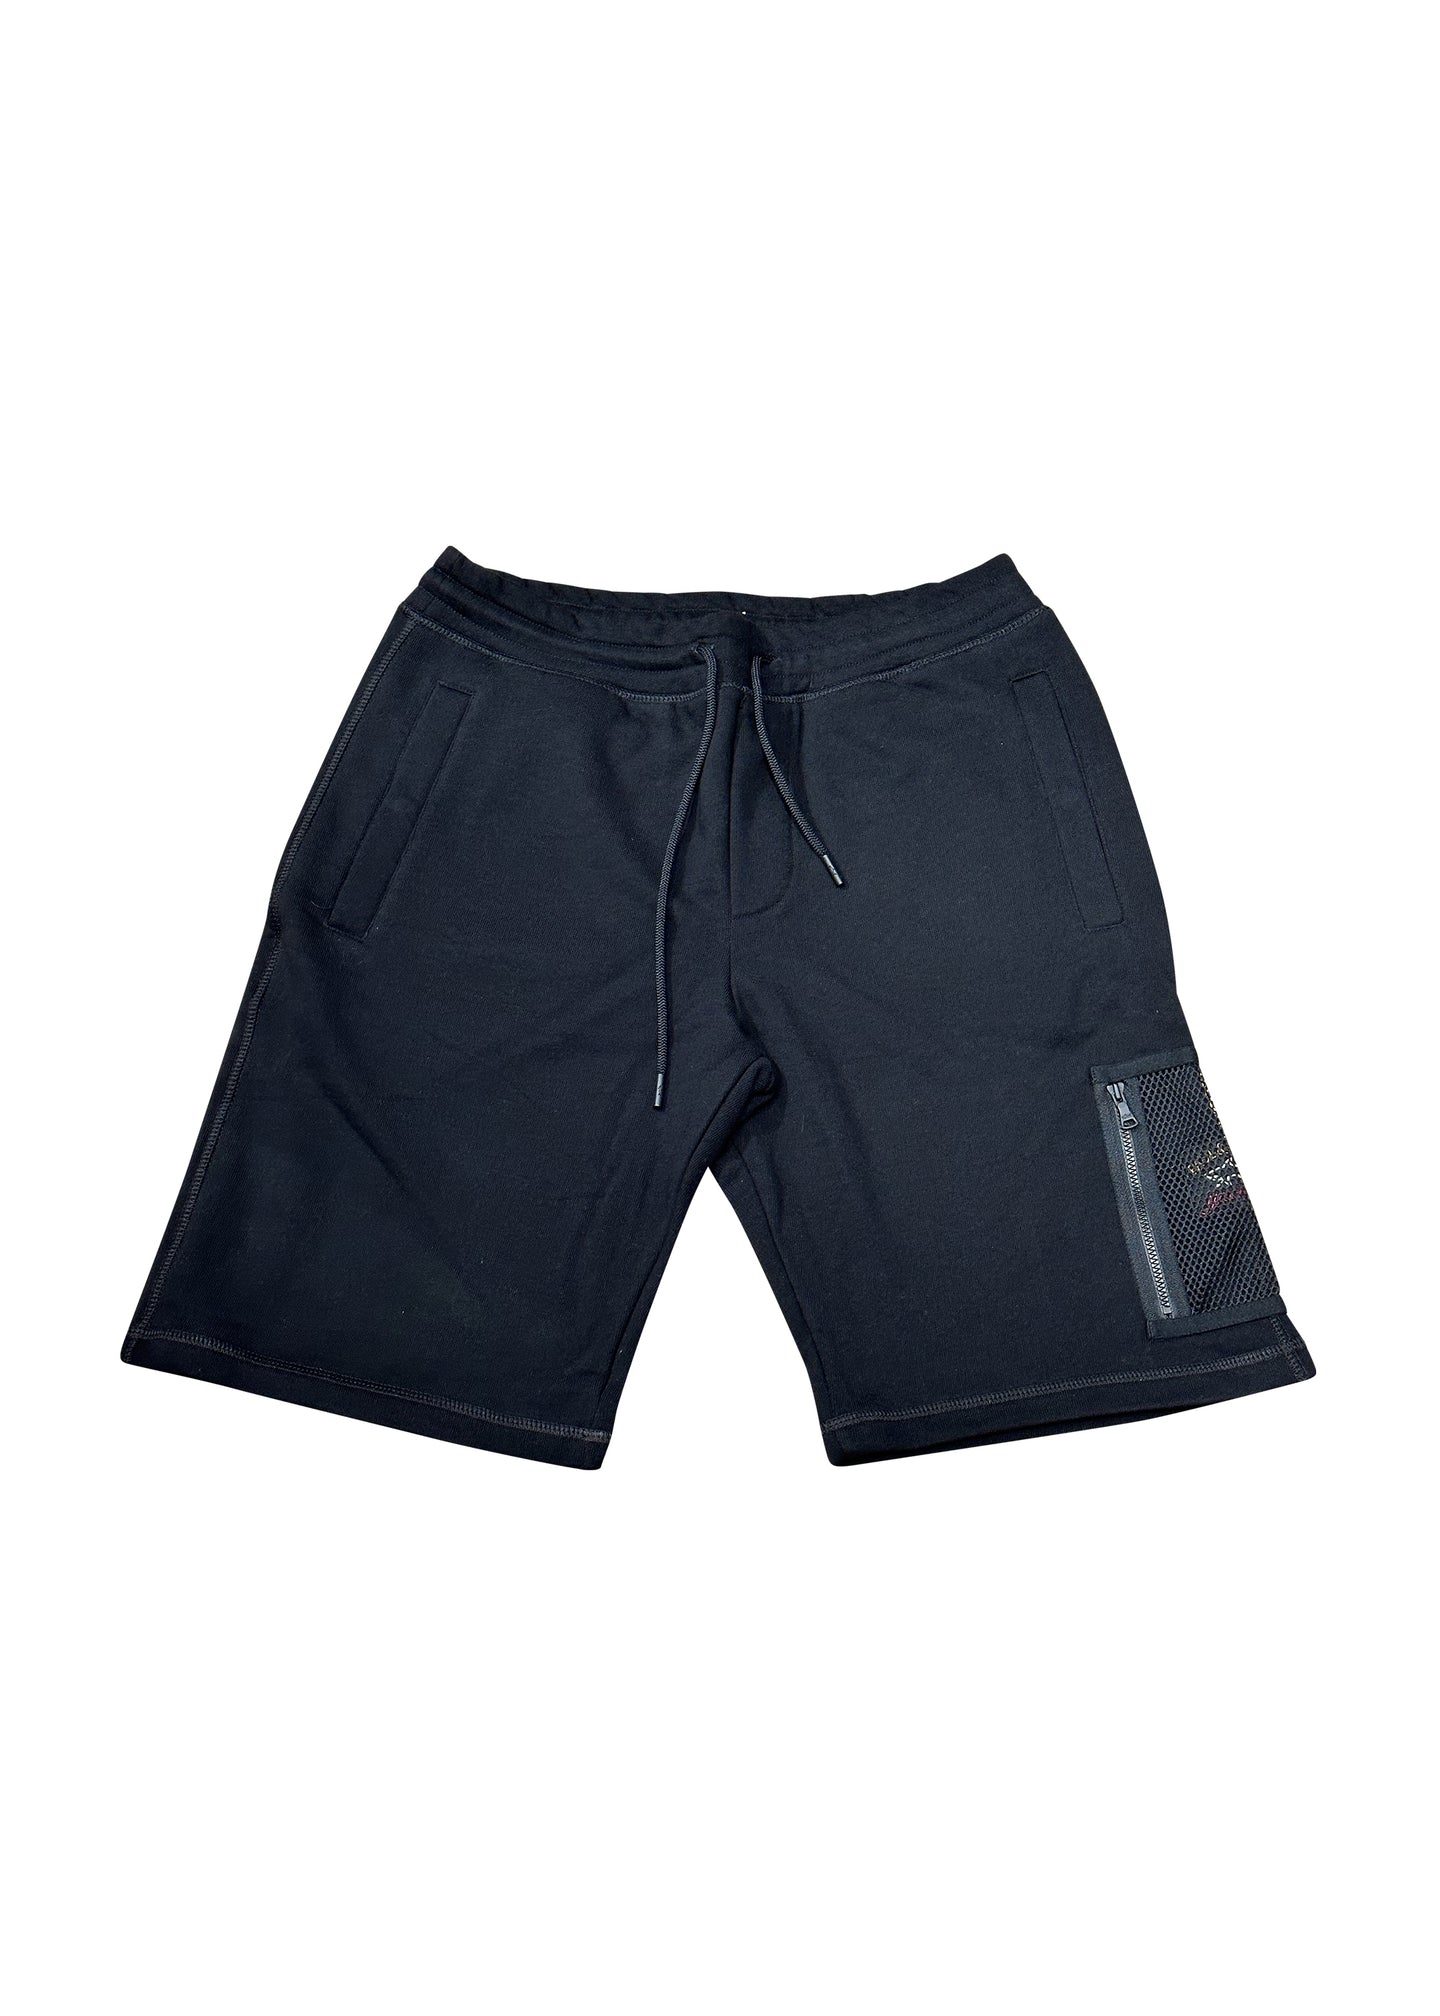 Paul & Shark - Mesh Pocket Shorts - 300101 - Black